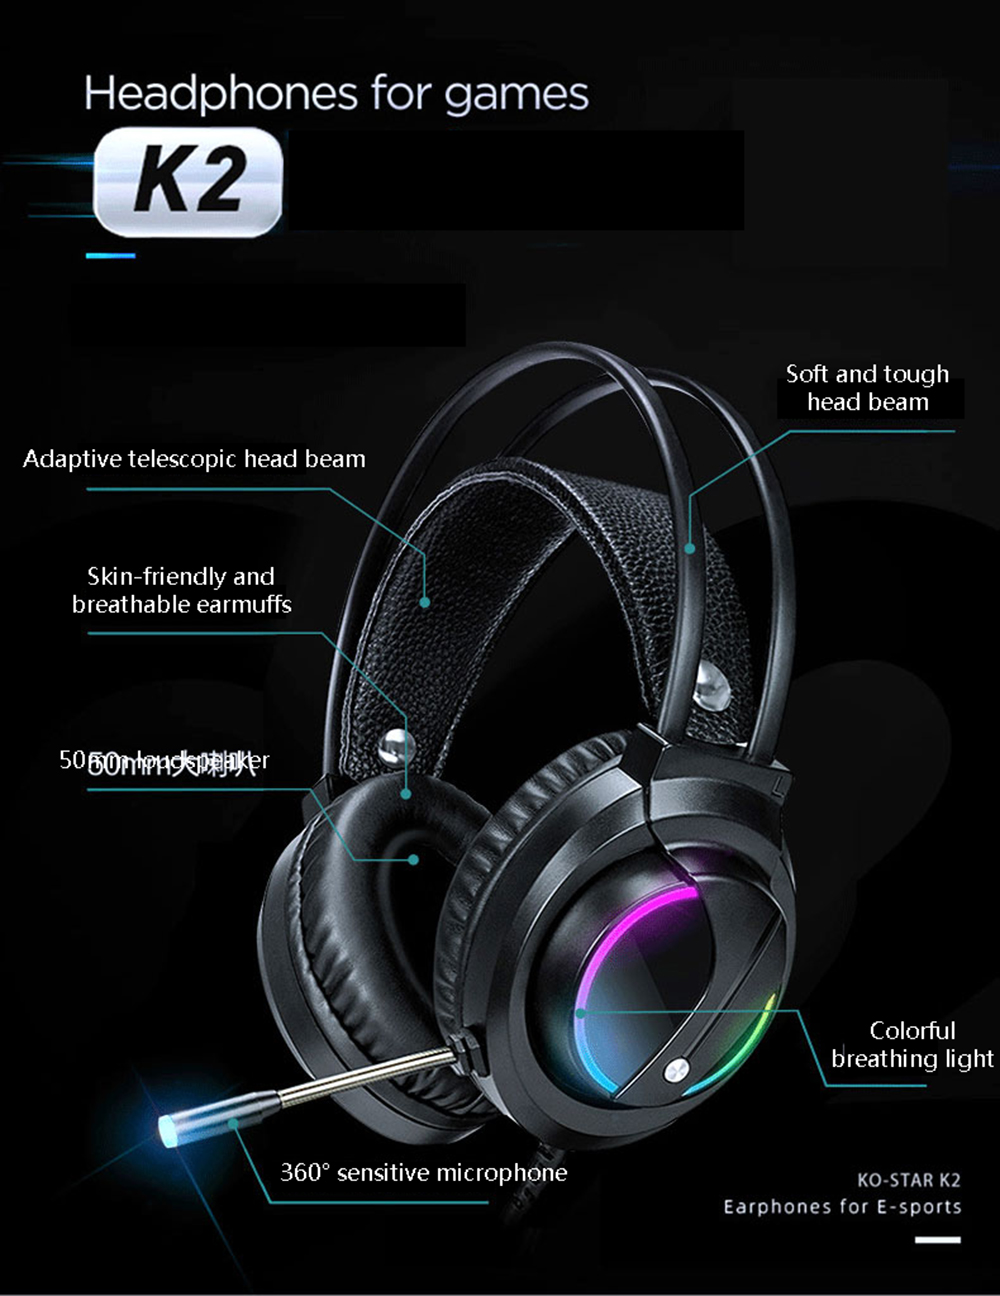 KO-STAR-K2-Gaming-Headset-50mm-Loudspeaker-Colorful-Breathing-Light-360deg-Sensitive-Microphone-for--1824486-1